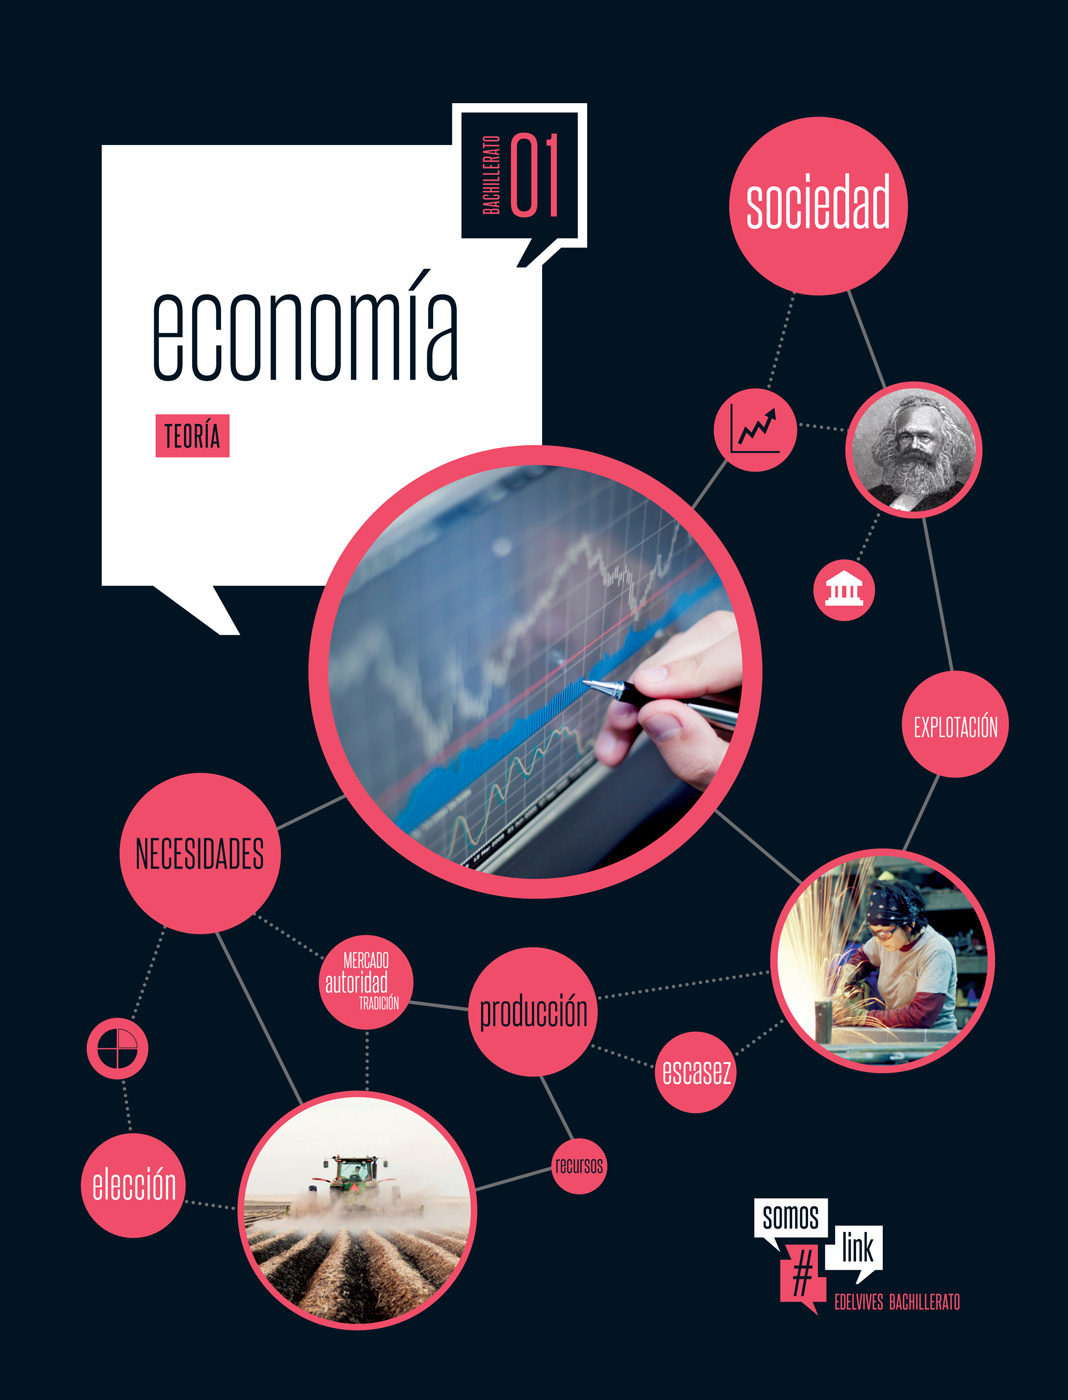 Solucionario Economia 1 Bachillerato Edelvives Somos Link PDF Ejercicios Resueltos-pdf